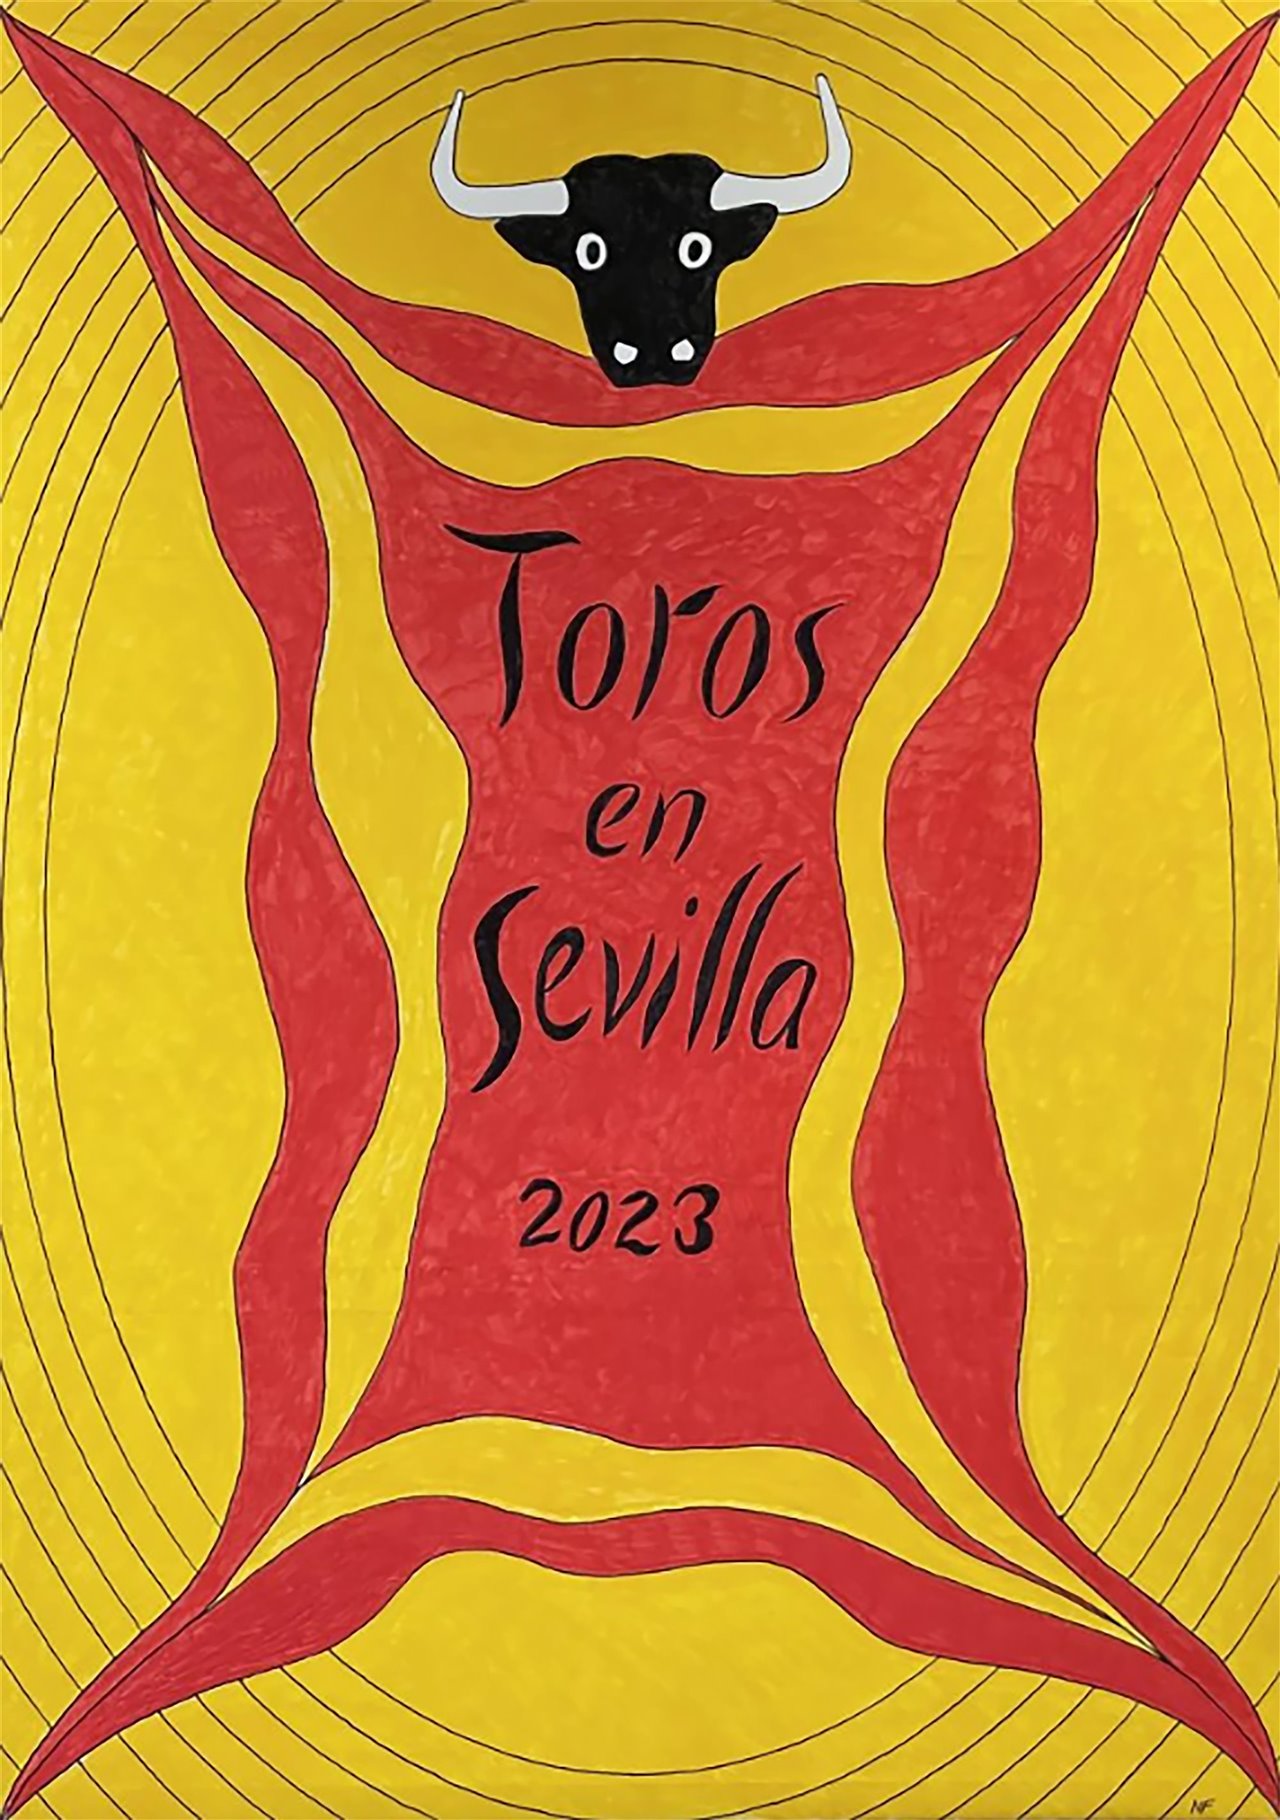 El cartel de Foster para la temporada taurina de 2023 en Sevilla